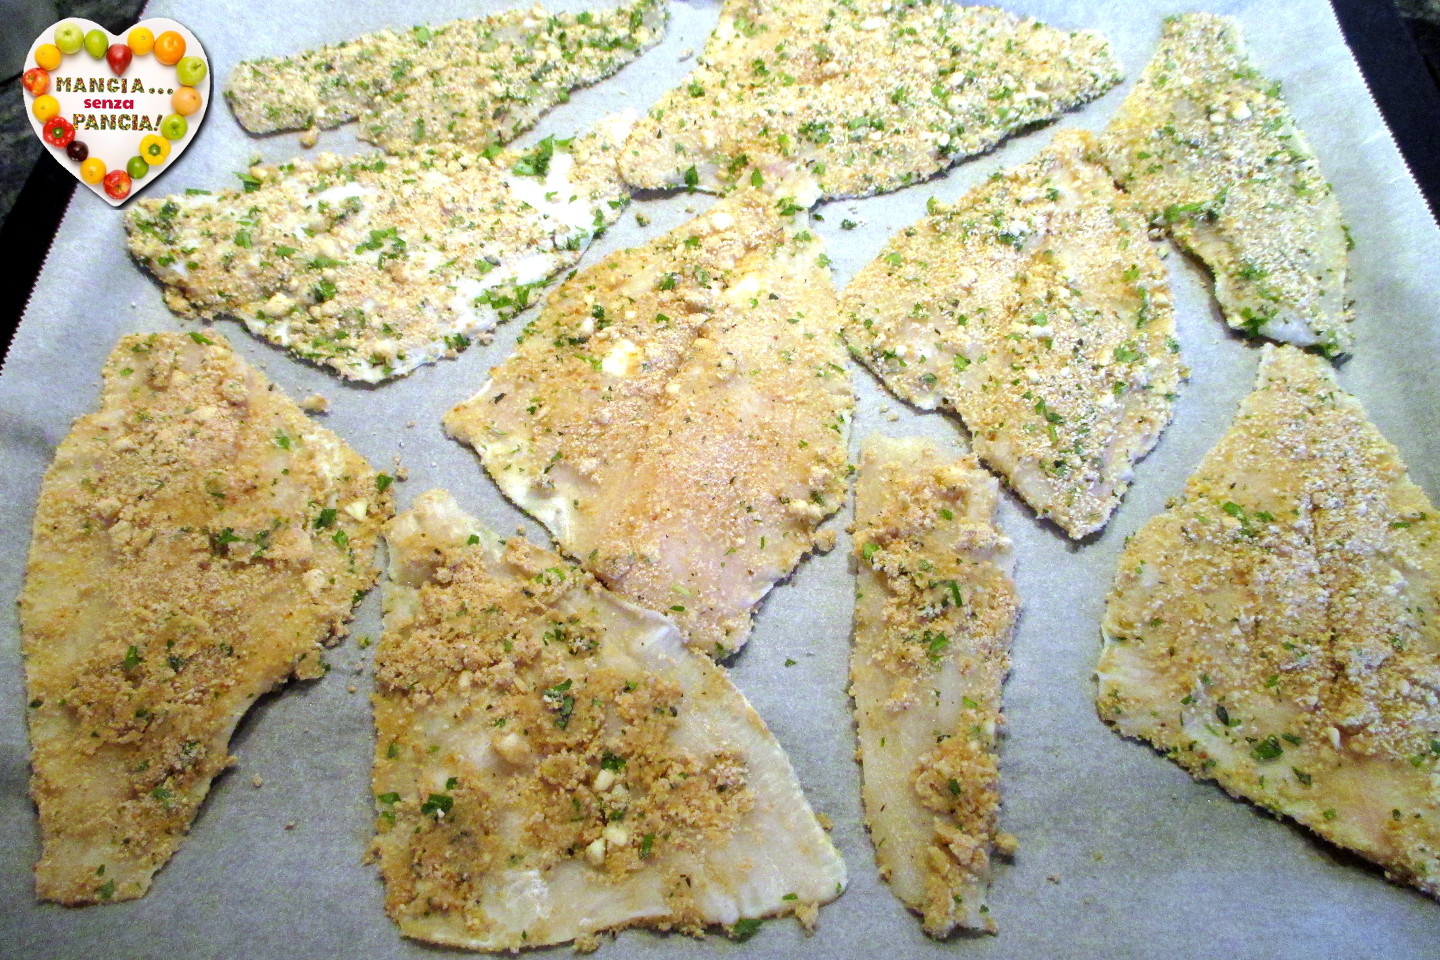 Filetti di pesce gratinati, Mangia senza Pancia